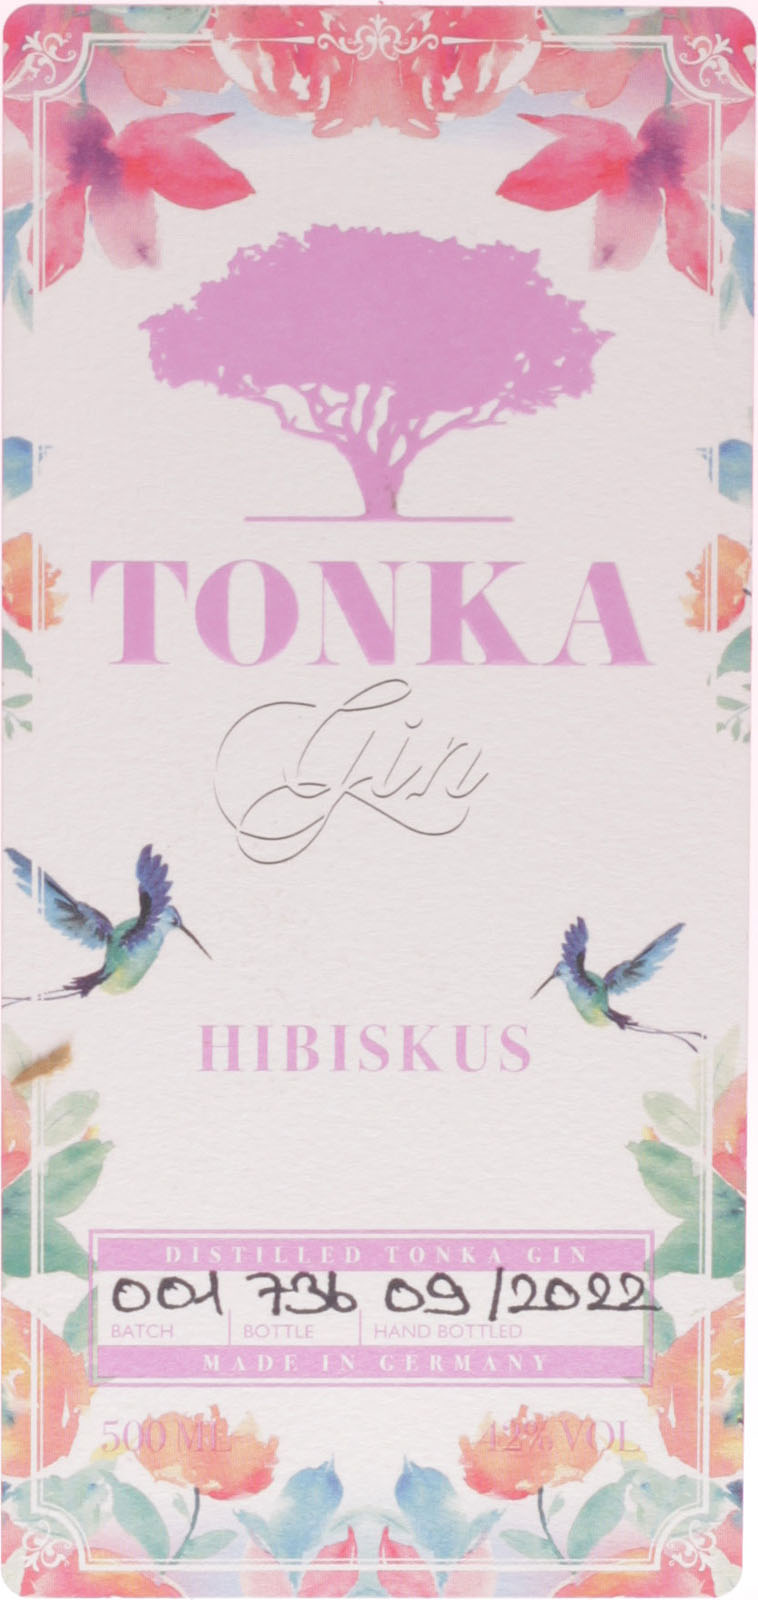 bei Tonka schnell Gin Shop im Hibiskus und günstig uns